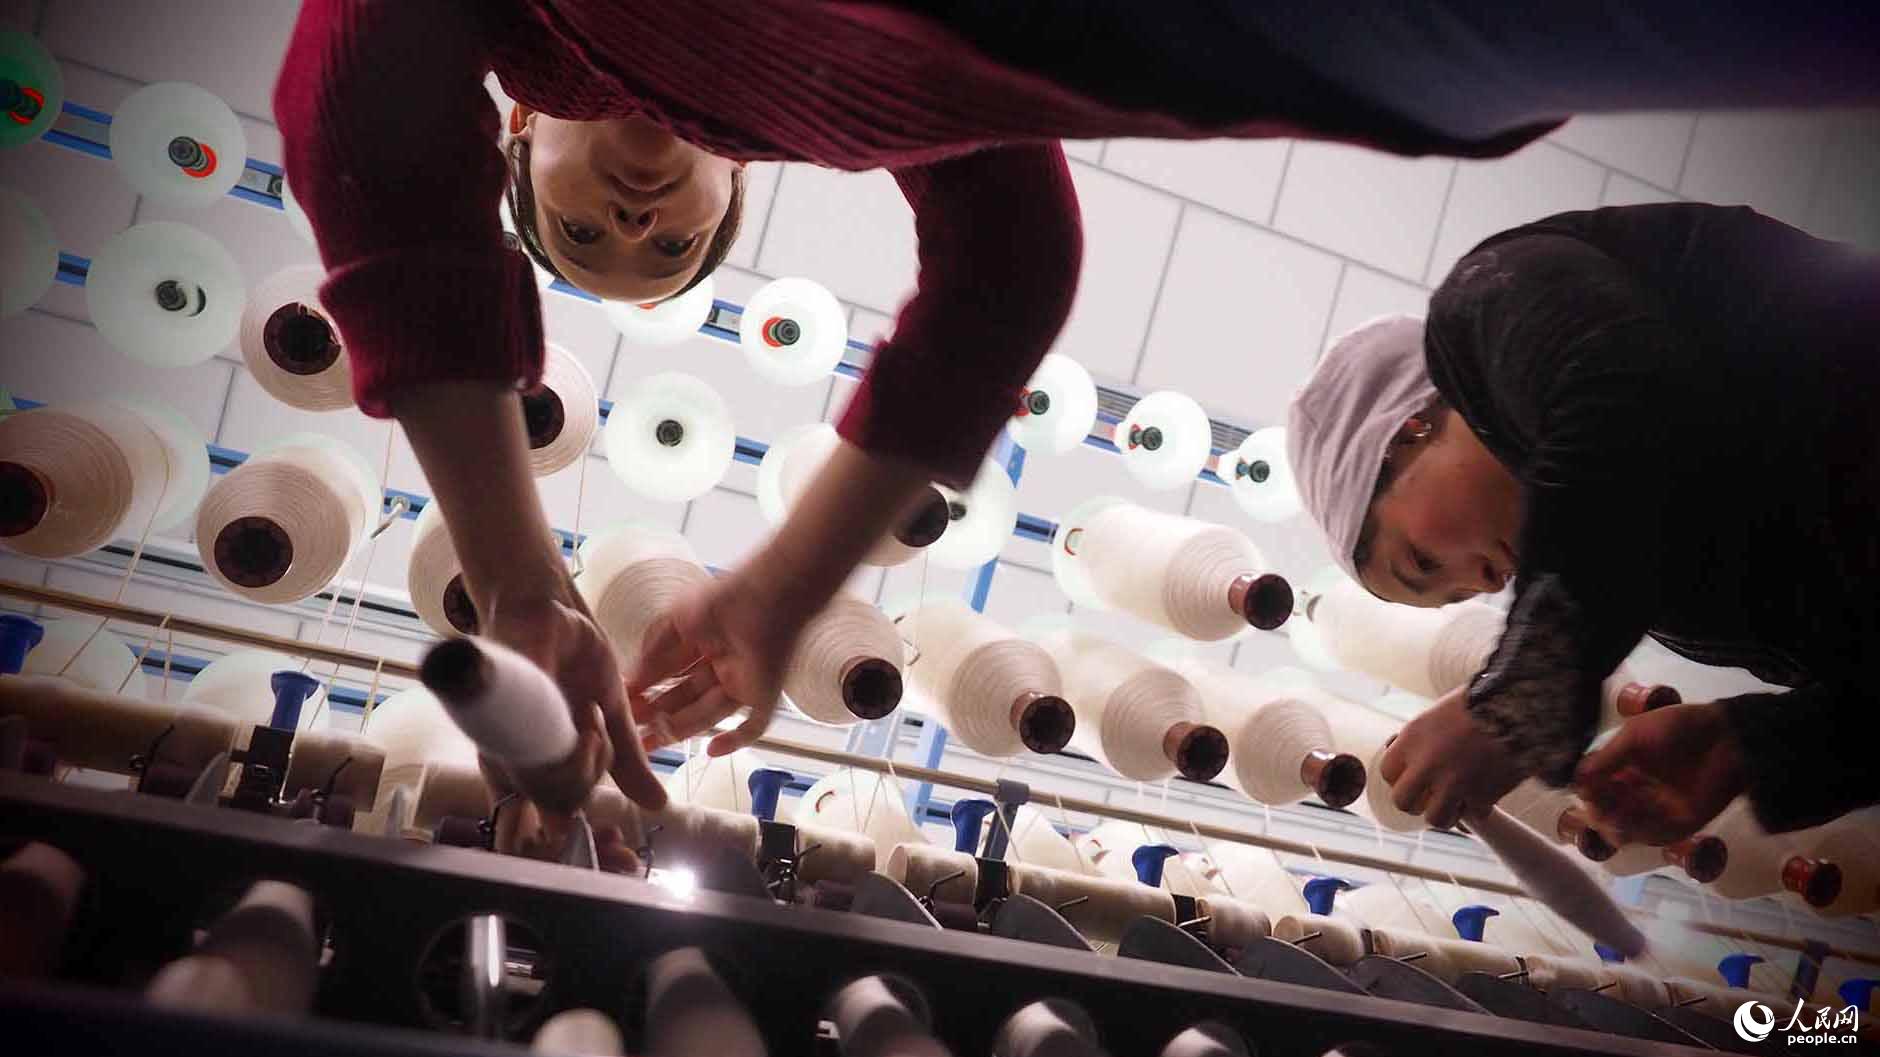 该市工业园已申请国家级经济技术开发区。在前海棉纺织公司，过去一直无业在家的维吾尔族妇女，如今经过培训，进入工厂，平均每月能收入3000多元。该公司日前启动的15万锭全精梳项目，预计可解决1200个直接就业岗位，创利润4000万。